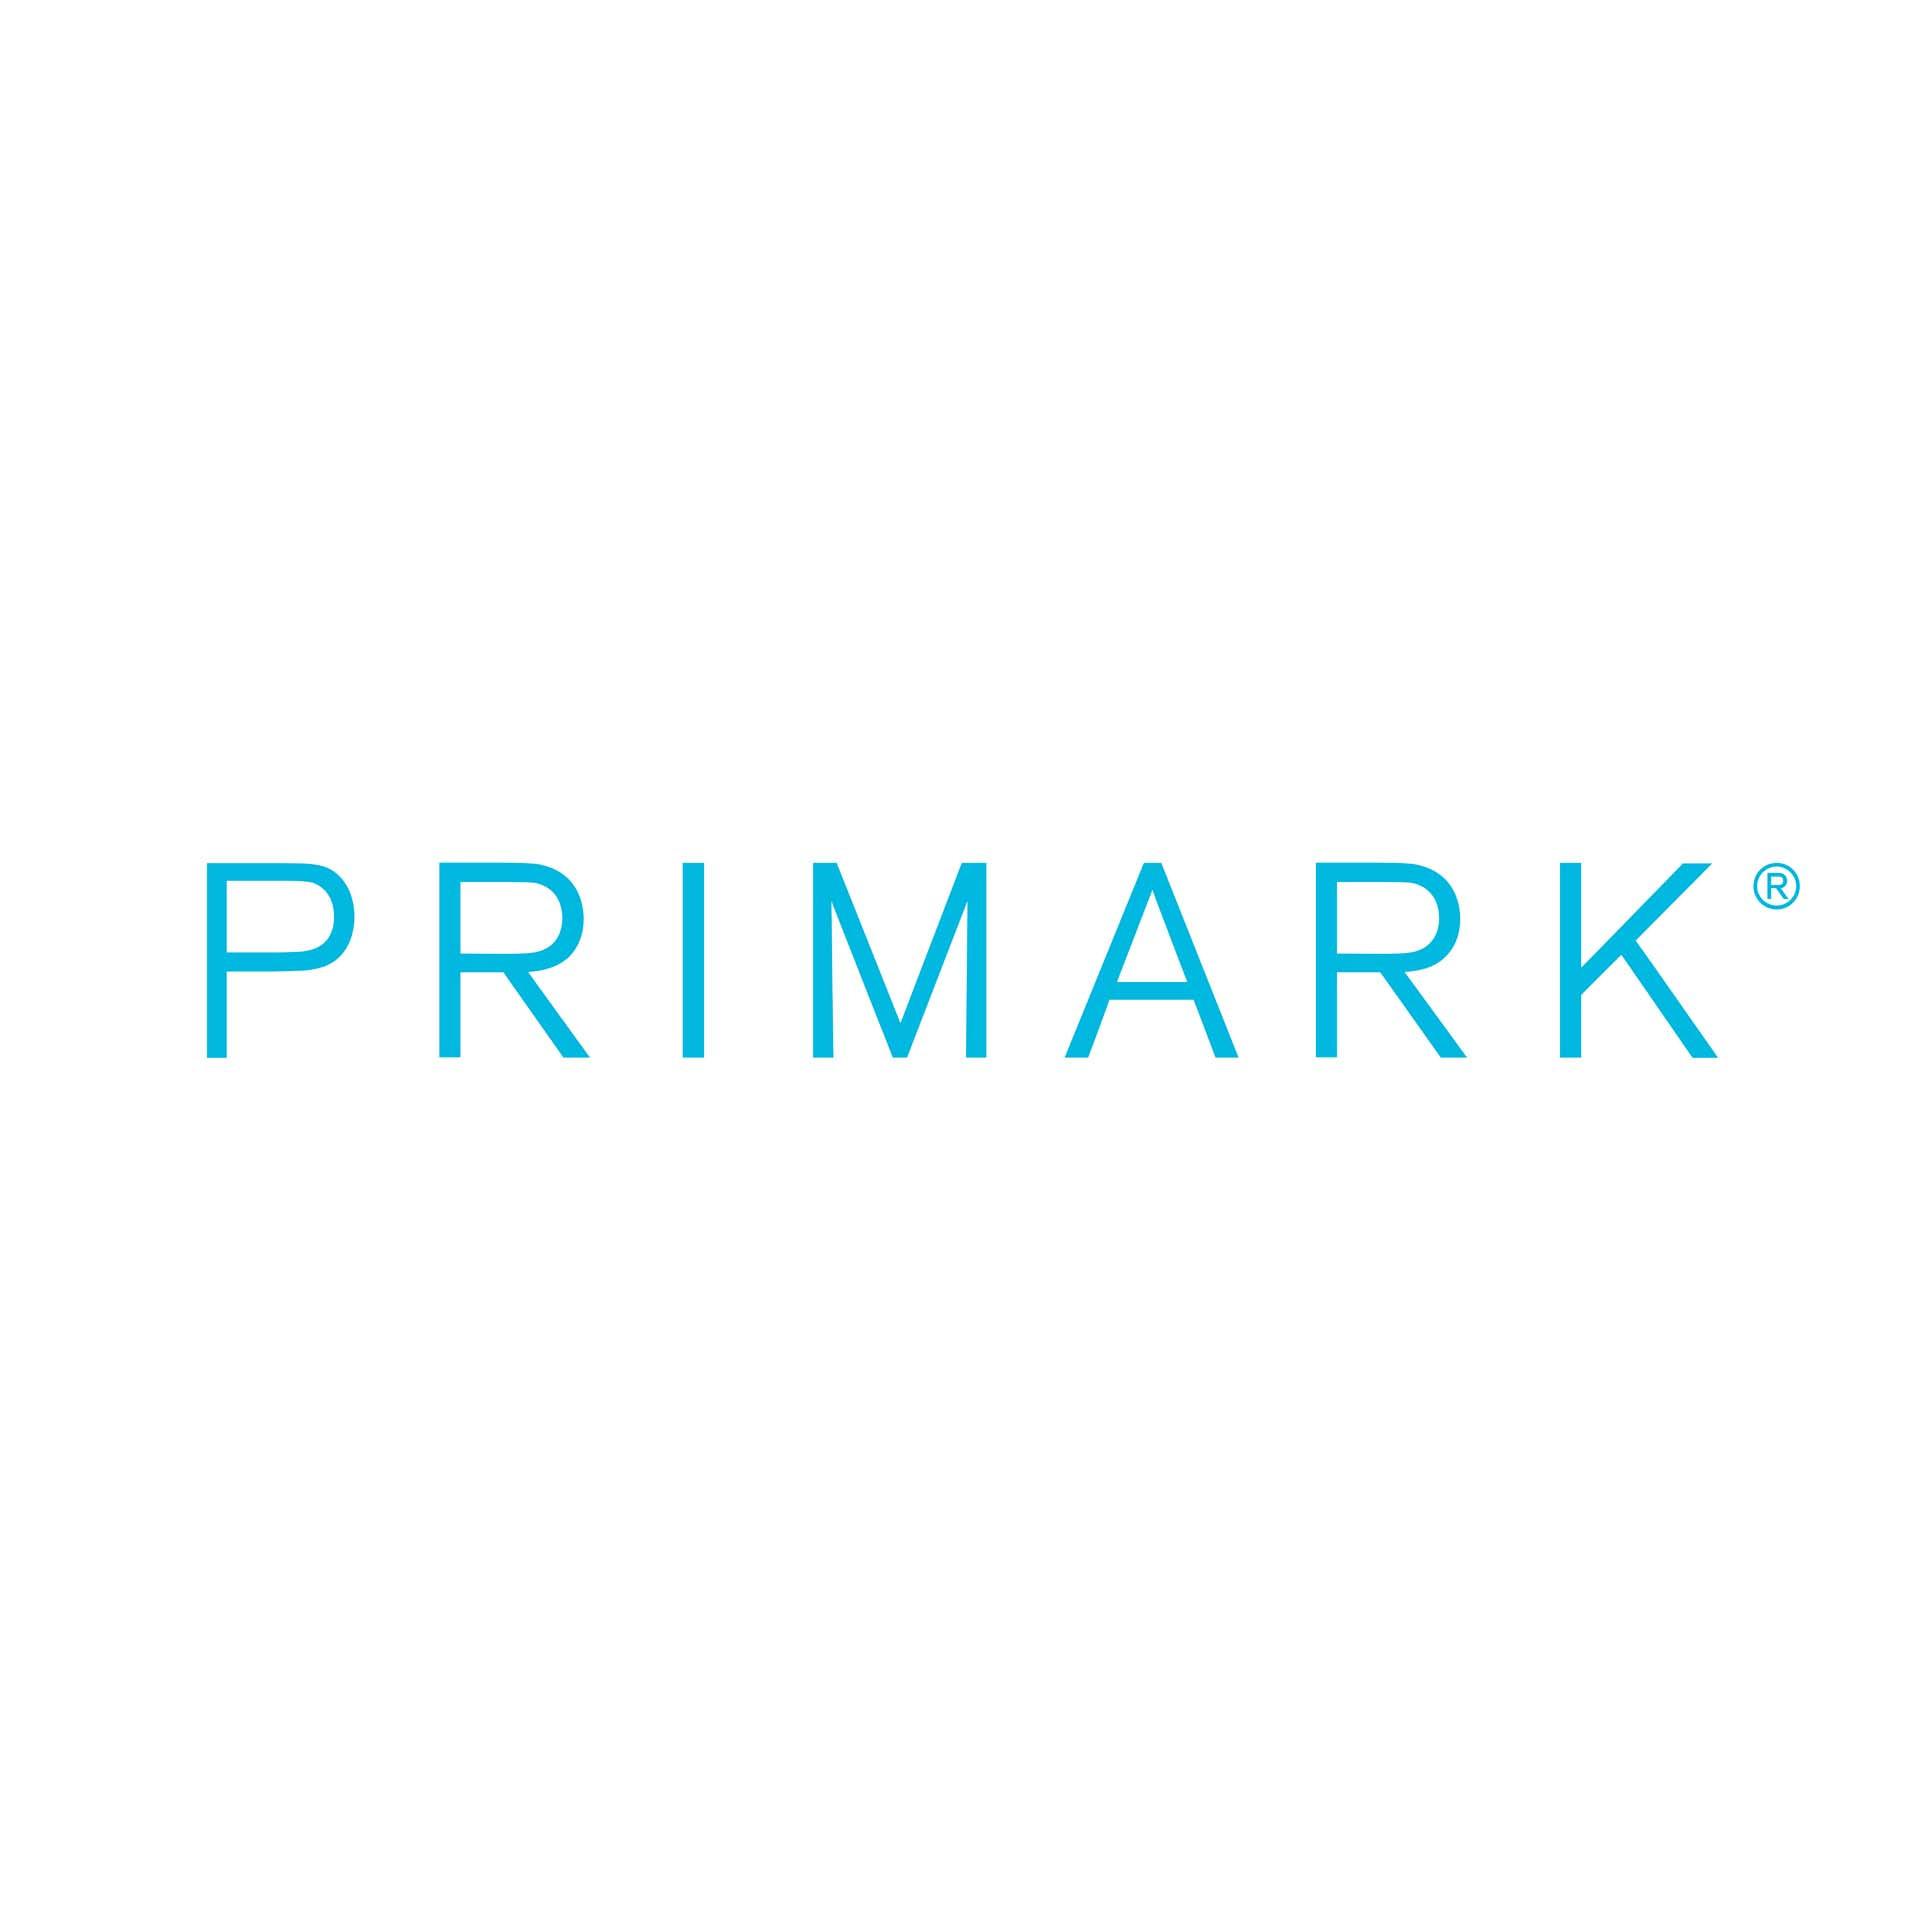 Logo spoločnosti Primark